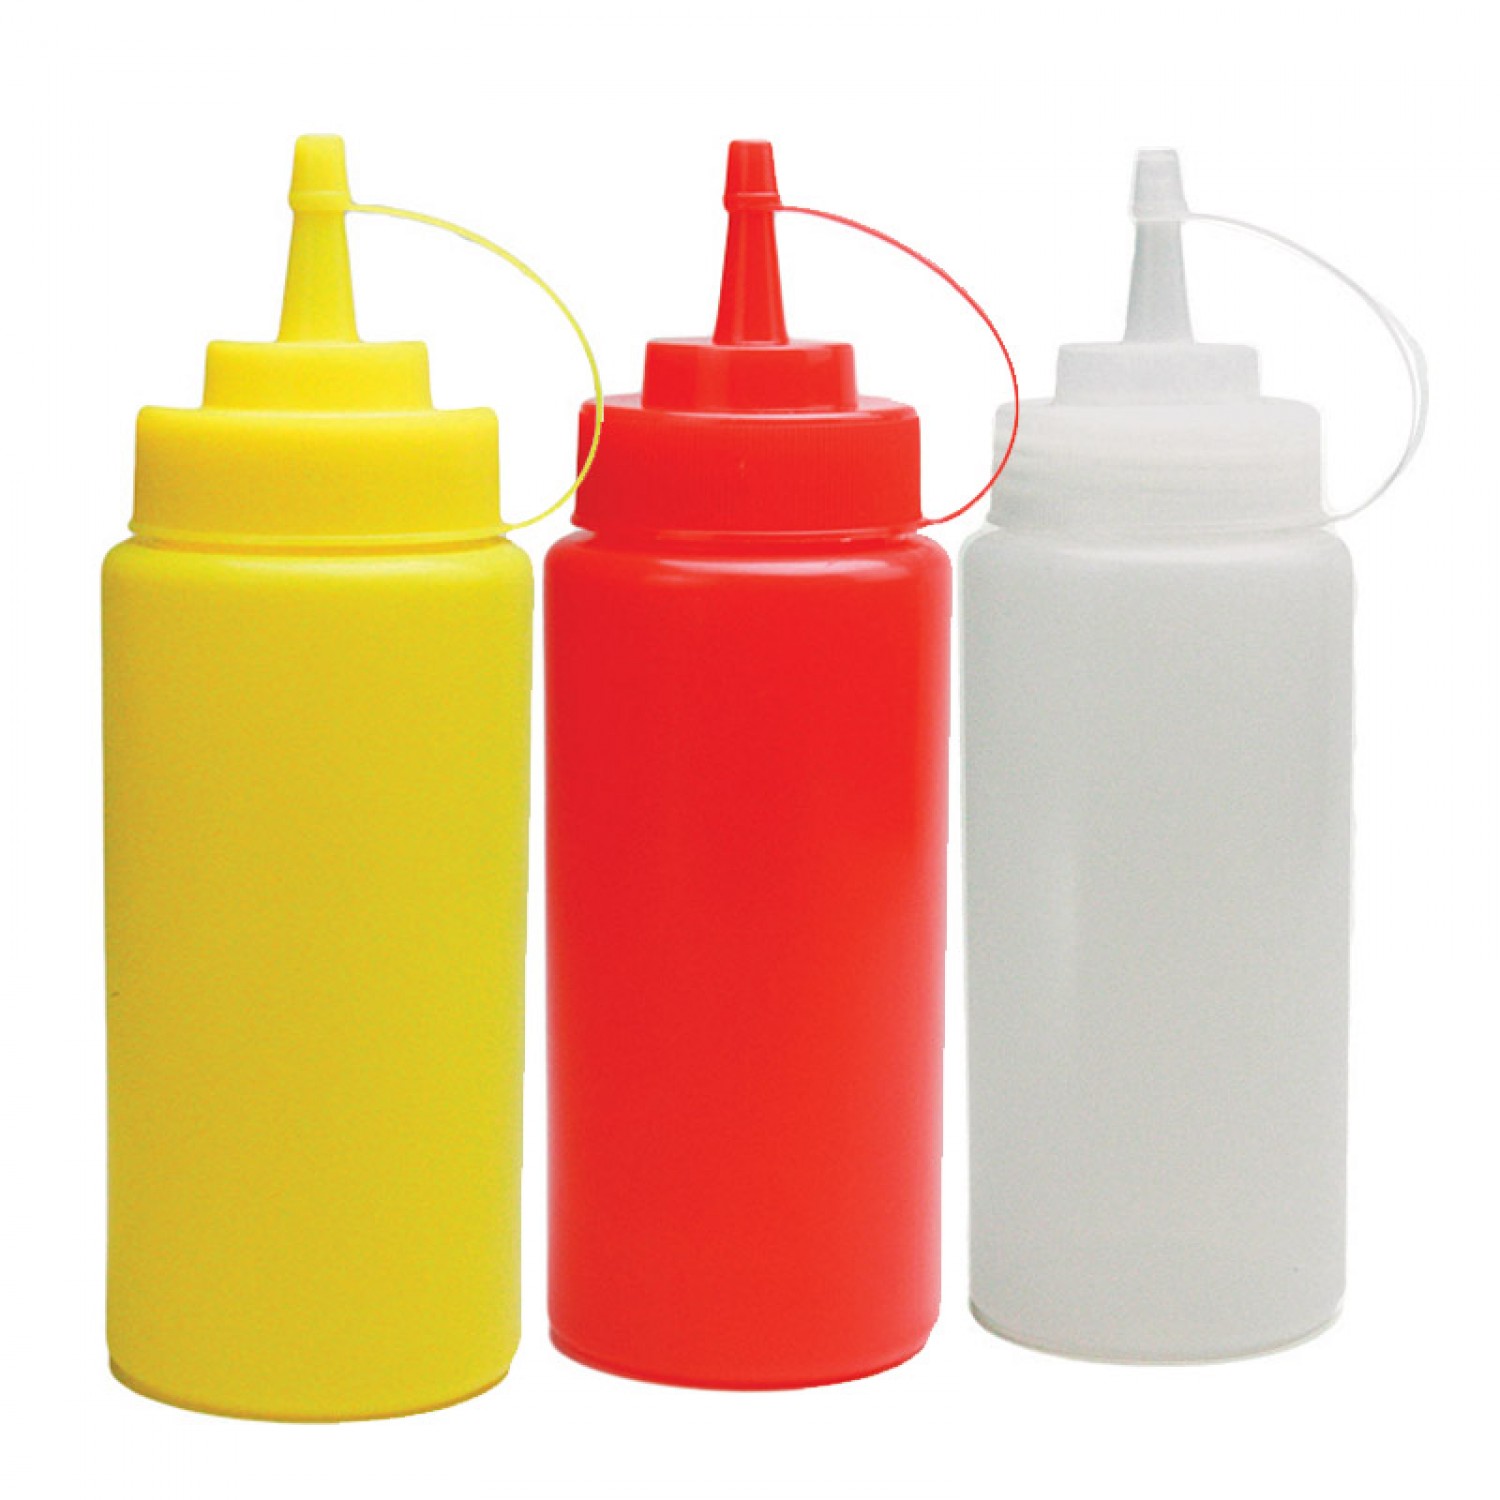 Μπουκάλι πλαστικό σερβιρίσματος Διάφανο χρώμα 16oz (475ml)